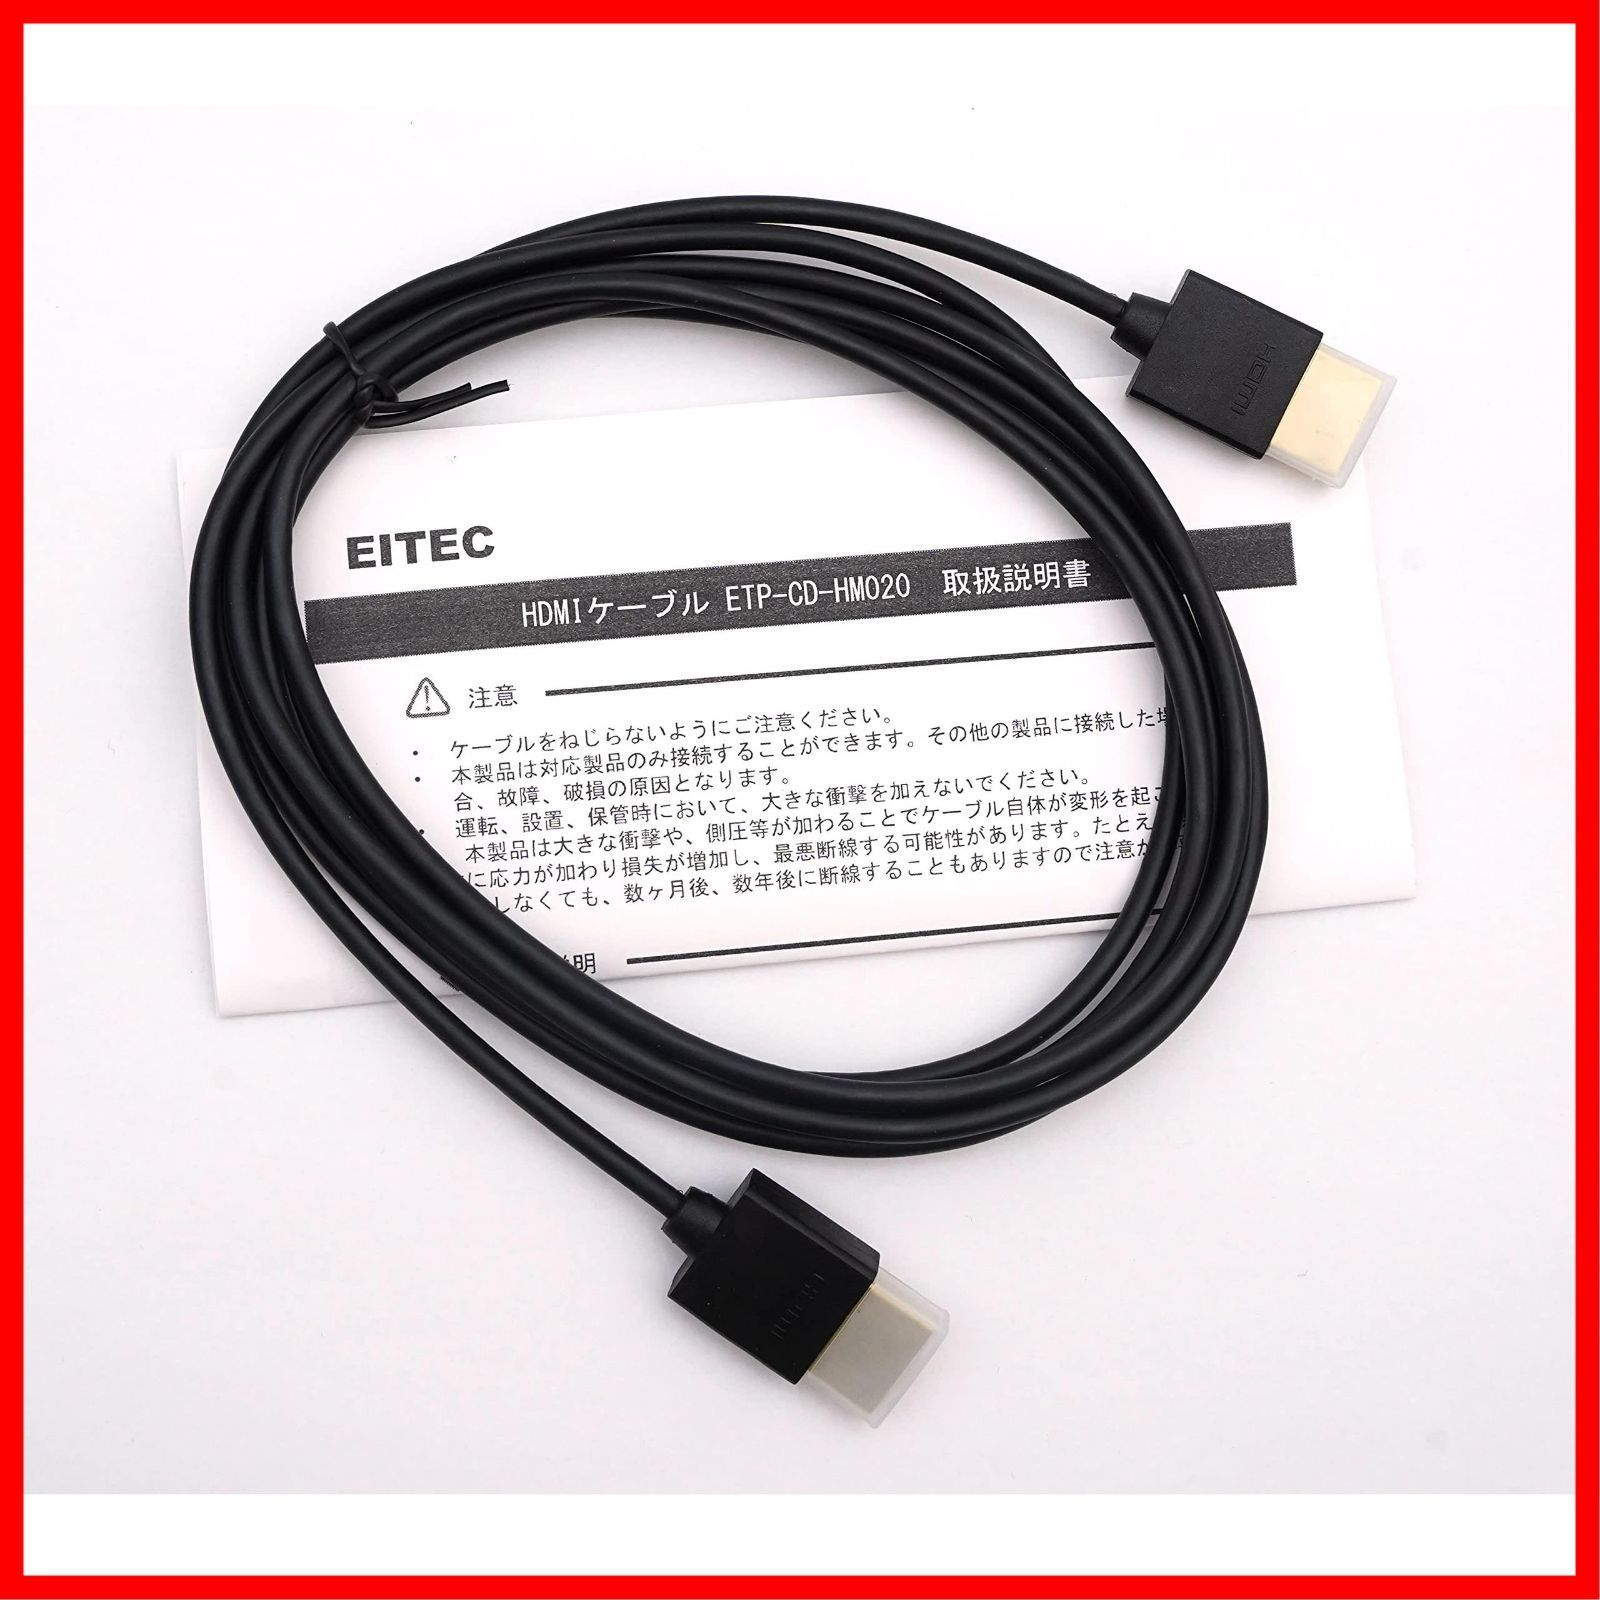 新着商品】EITEC カロッツェリア(パイオニア) Pioneer HDMIケーブル CD-HM020/CD-HM030/CD-HM051 互換品 2m  (ETP-CD-HM020) (１本入) - メルカリ